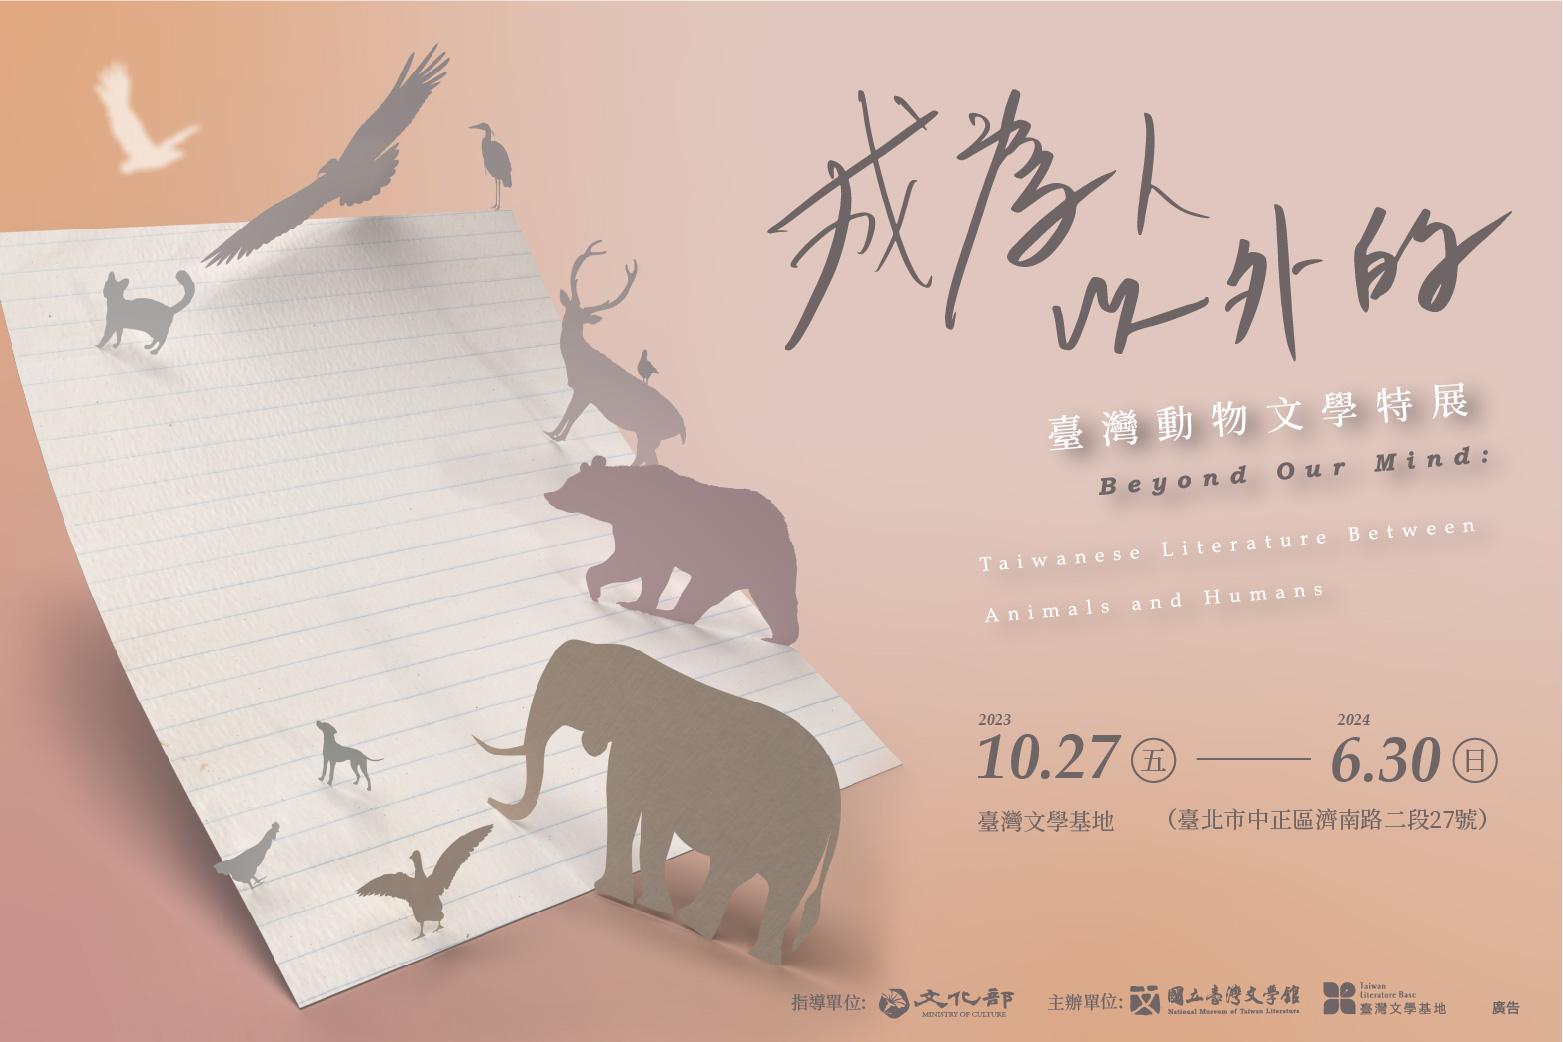 Beyond Anthropocentrism: Animals in Taiwan Literature